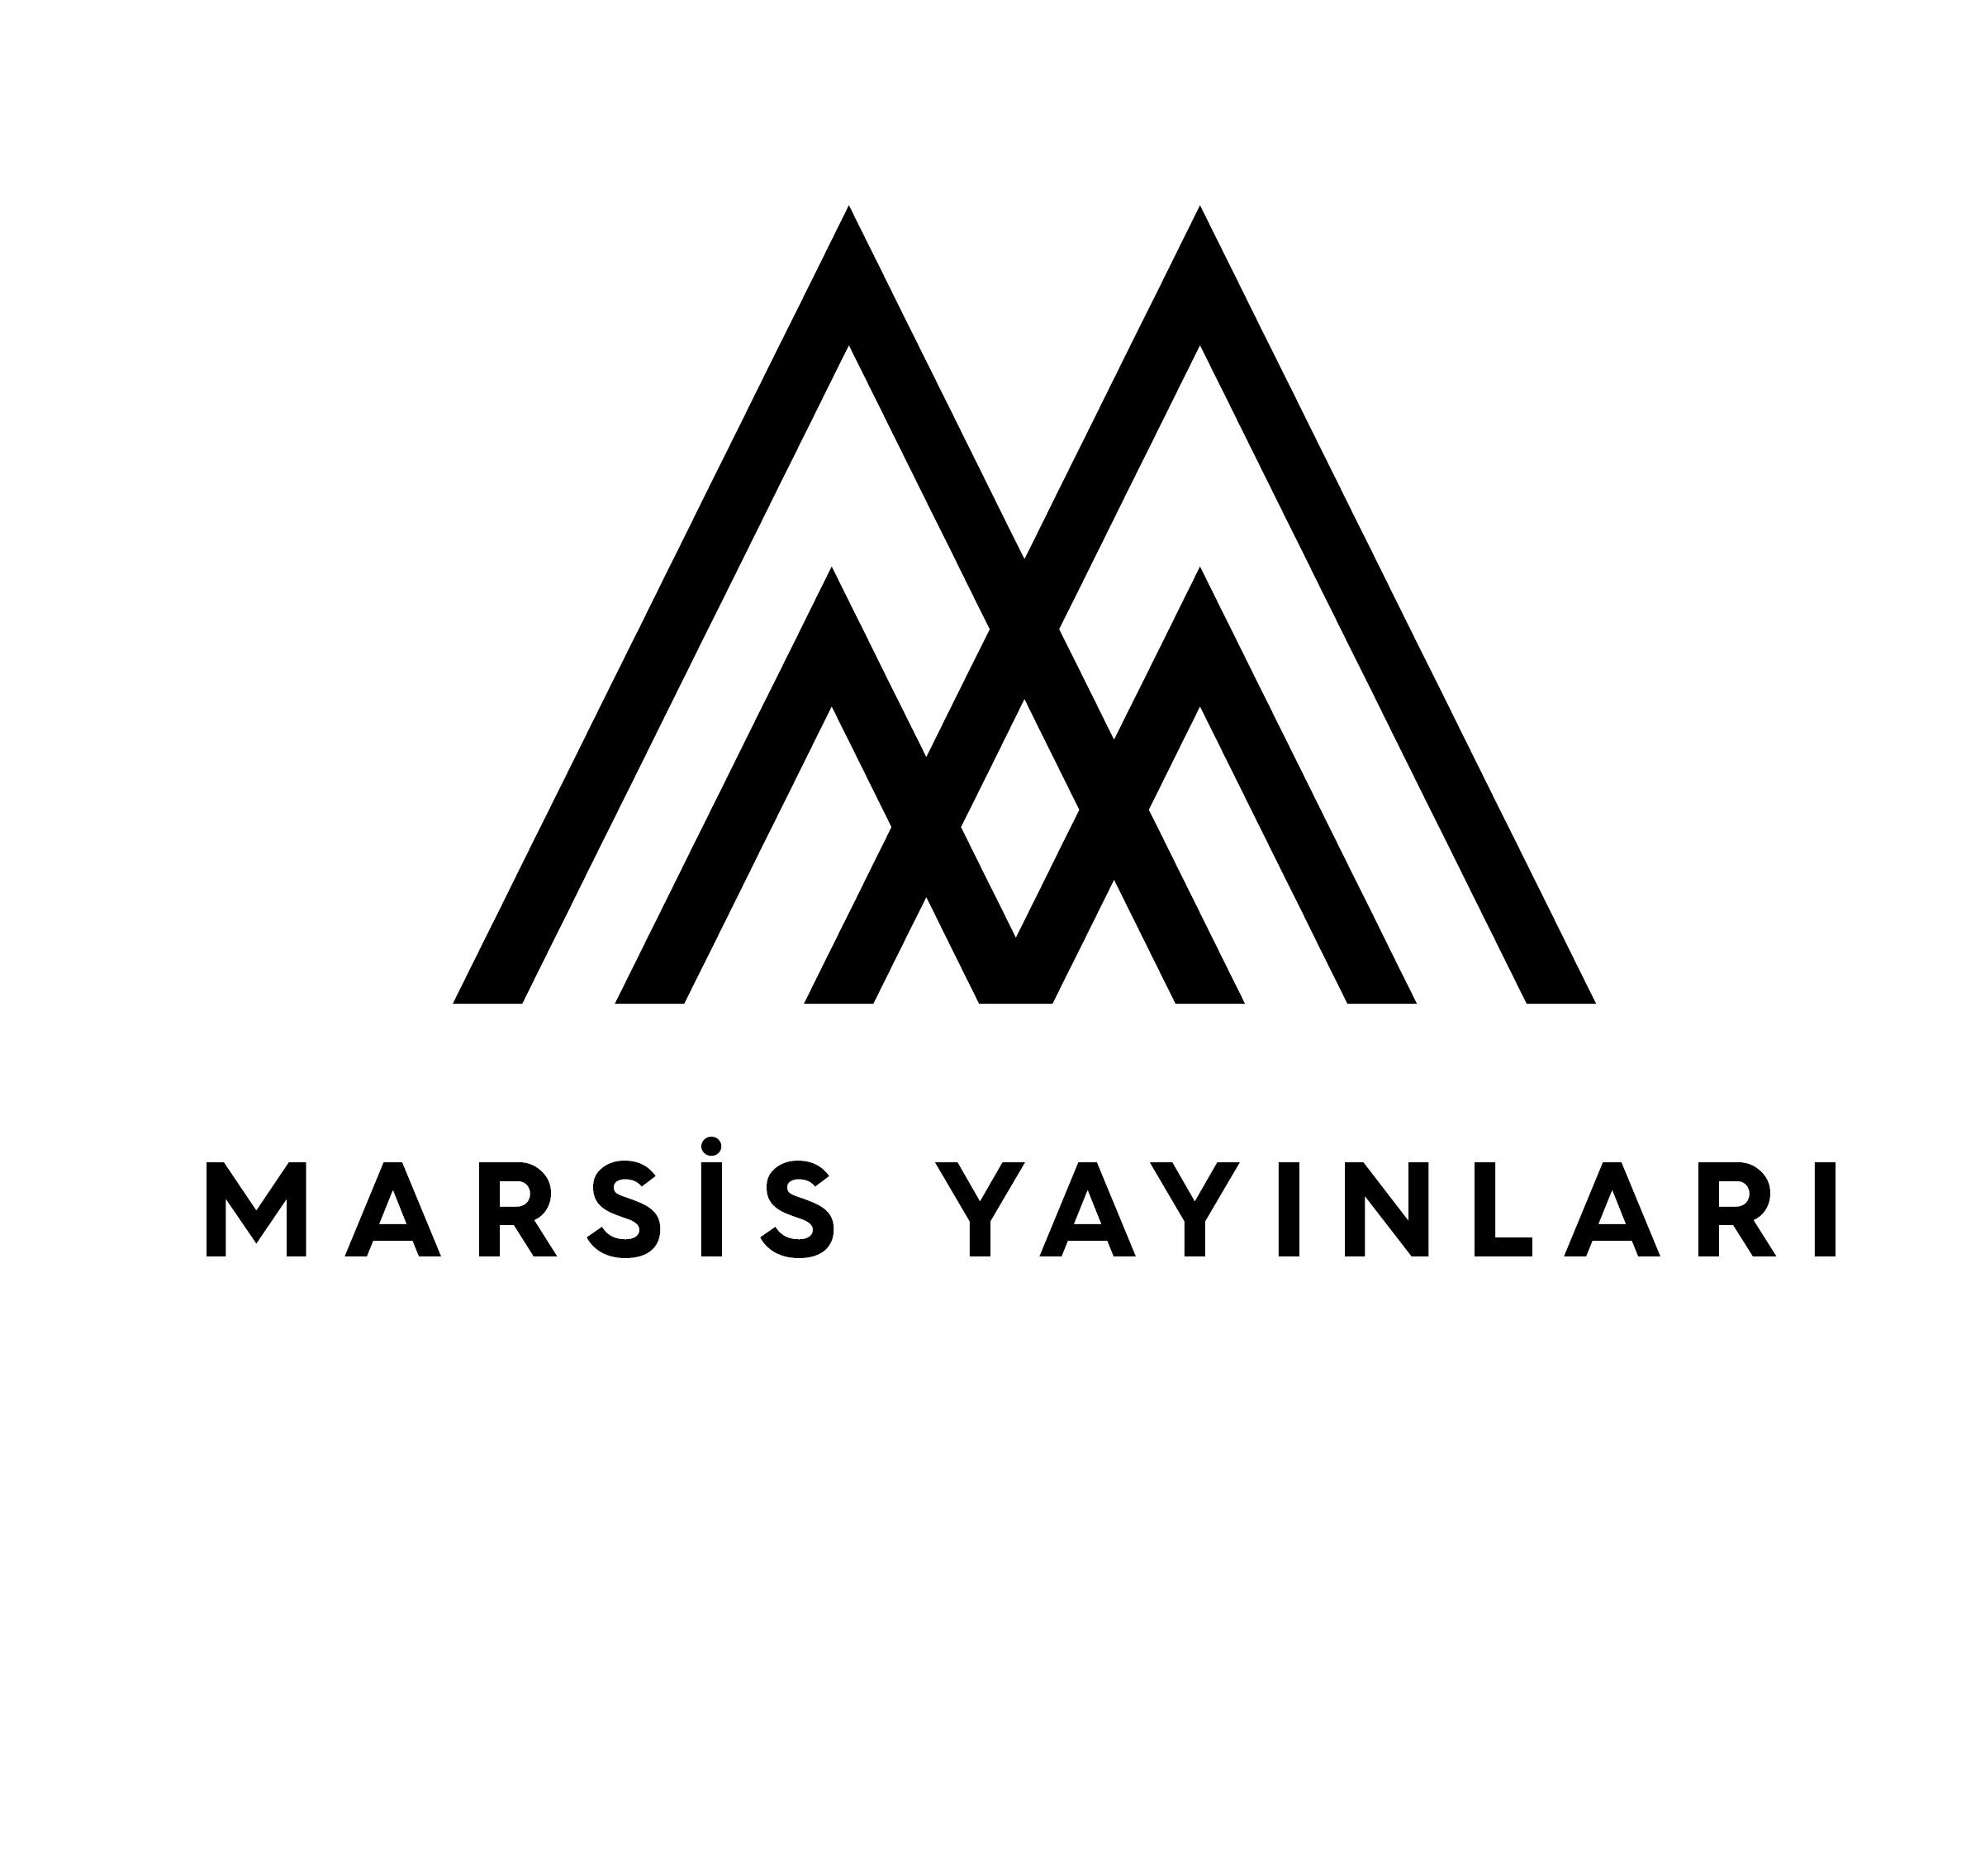 MNA_Marsis Yayınları_logo.jpg (204 KB)